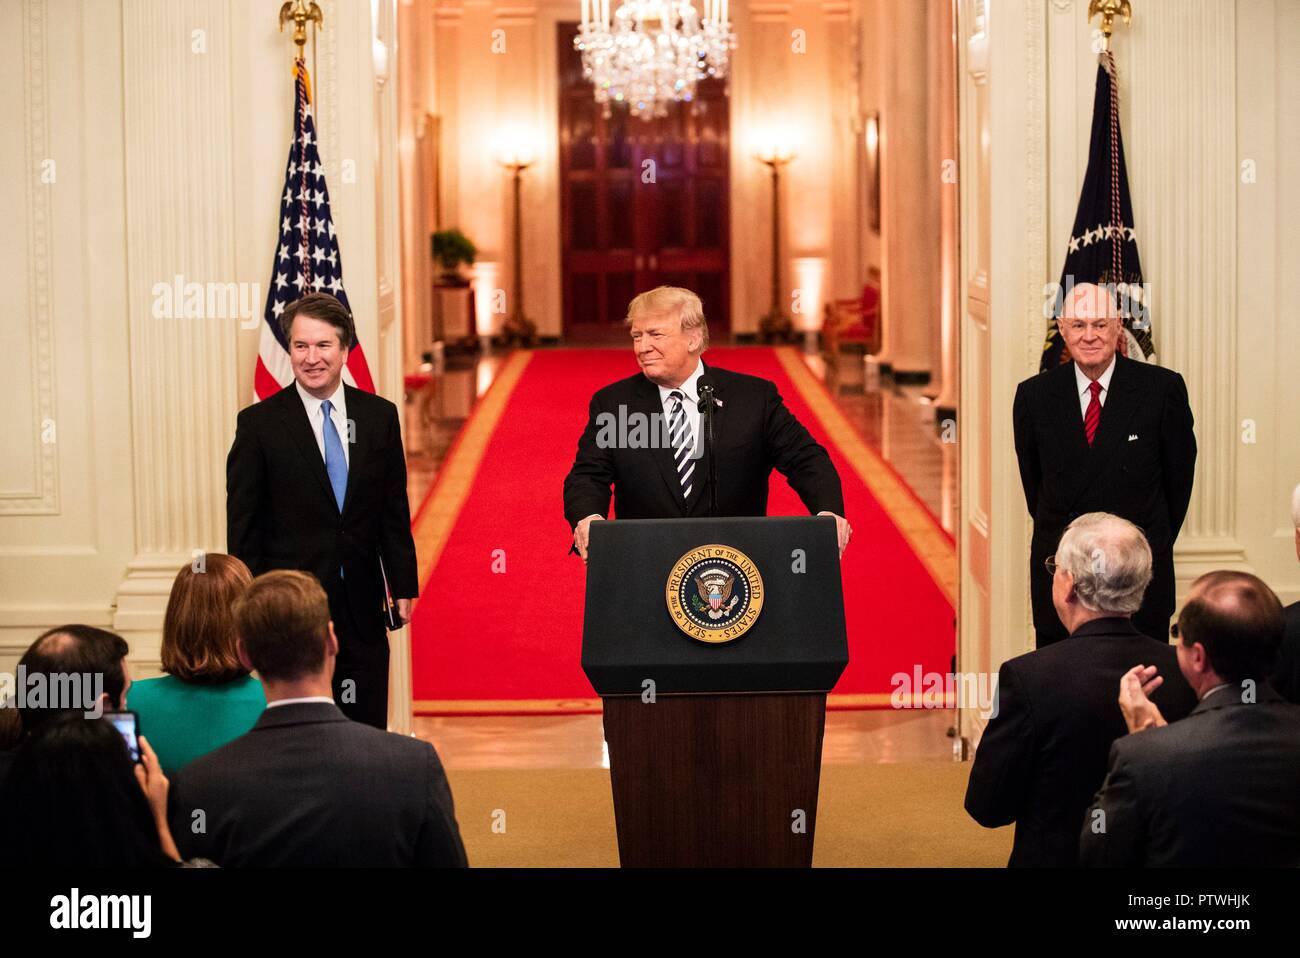 U.S presidente Donald Trump risolve il pubblico come pensionati della Corte Suprema Anthony Kennedy, destra e giudice Brett Kavanaugh, sinistra, guardare a seguito di un pubblico simbolico giuramento alla Casa Bianca il 8 ottobre 2018 a Washington DC. Foto Stock